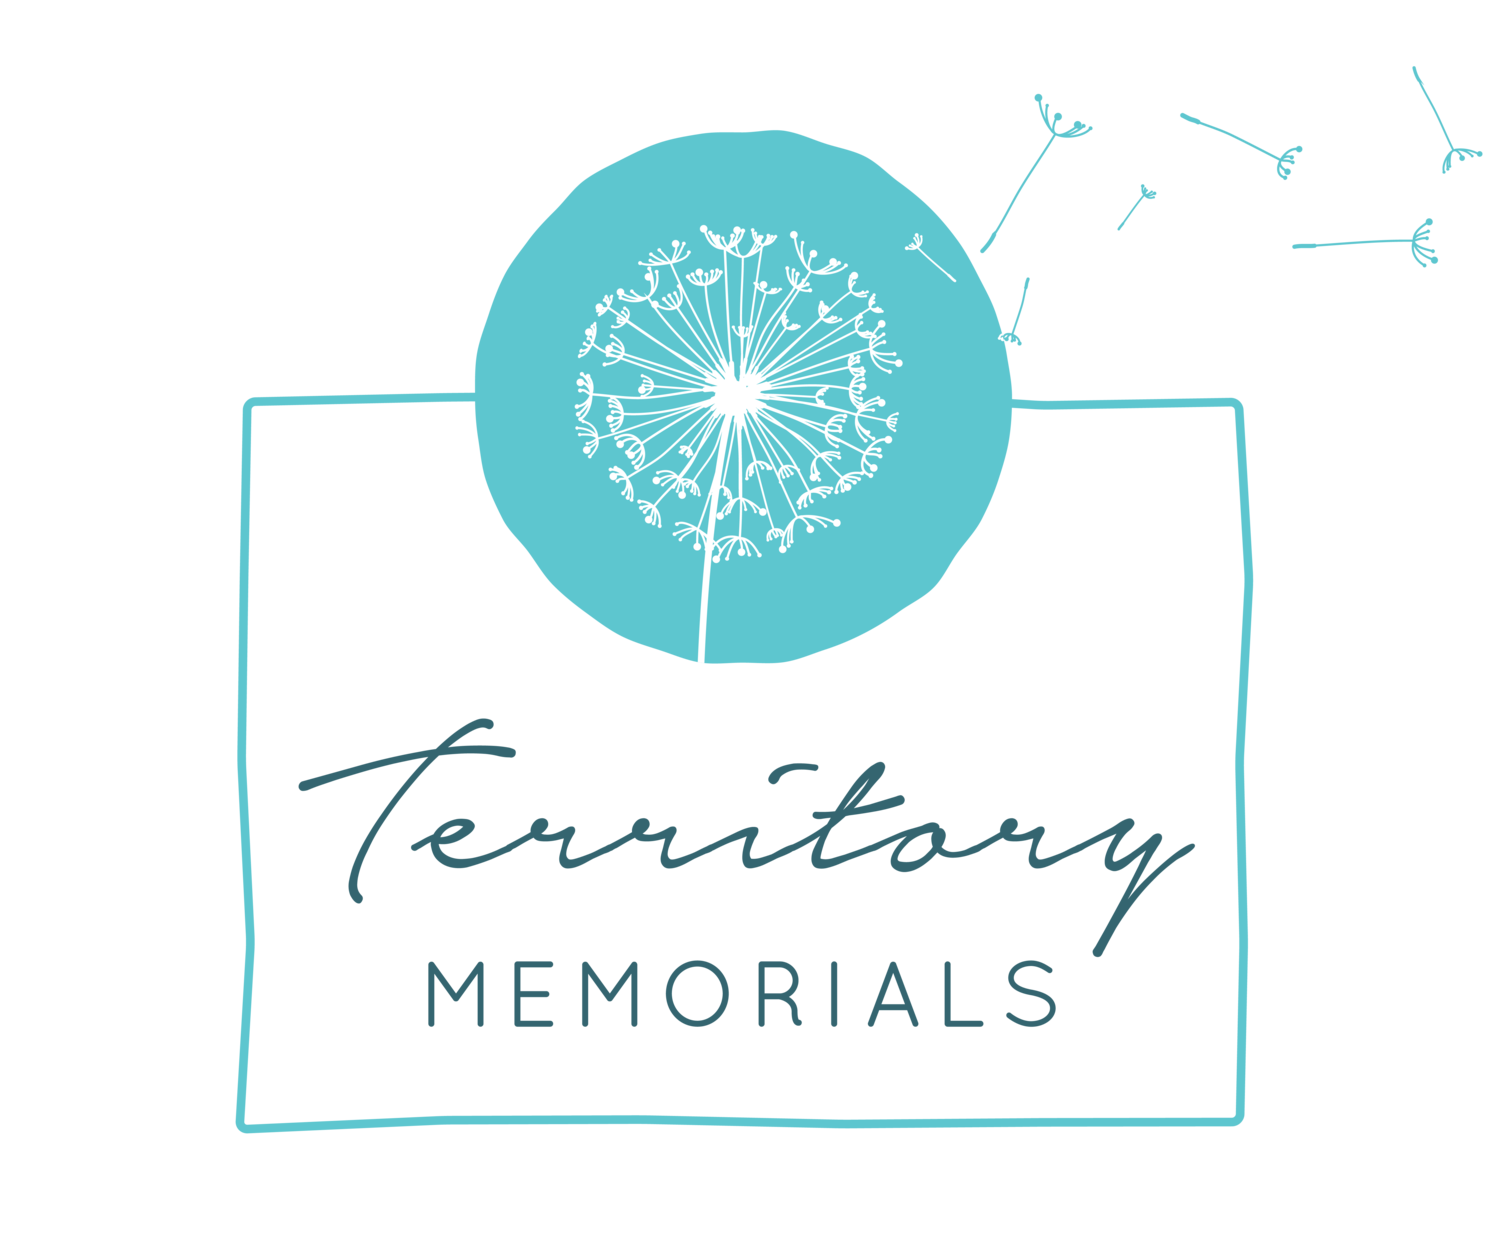 Territory Memorials